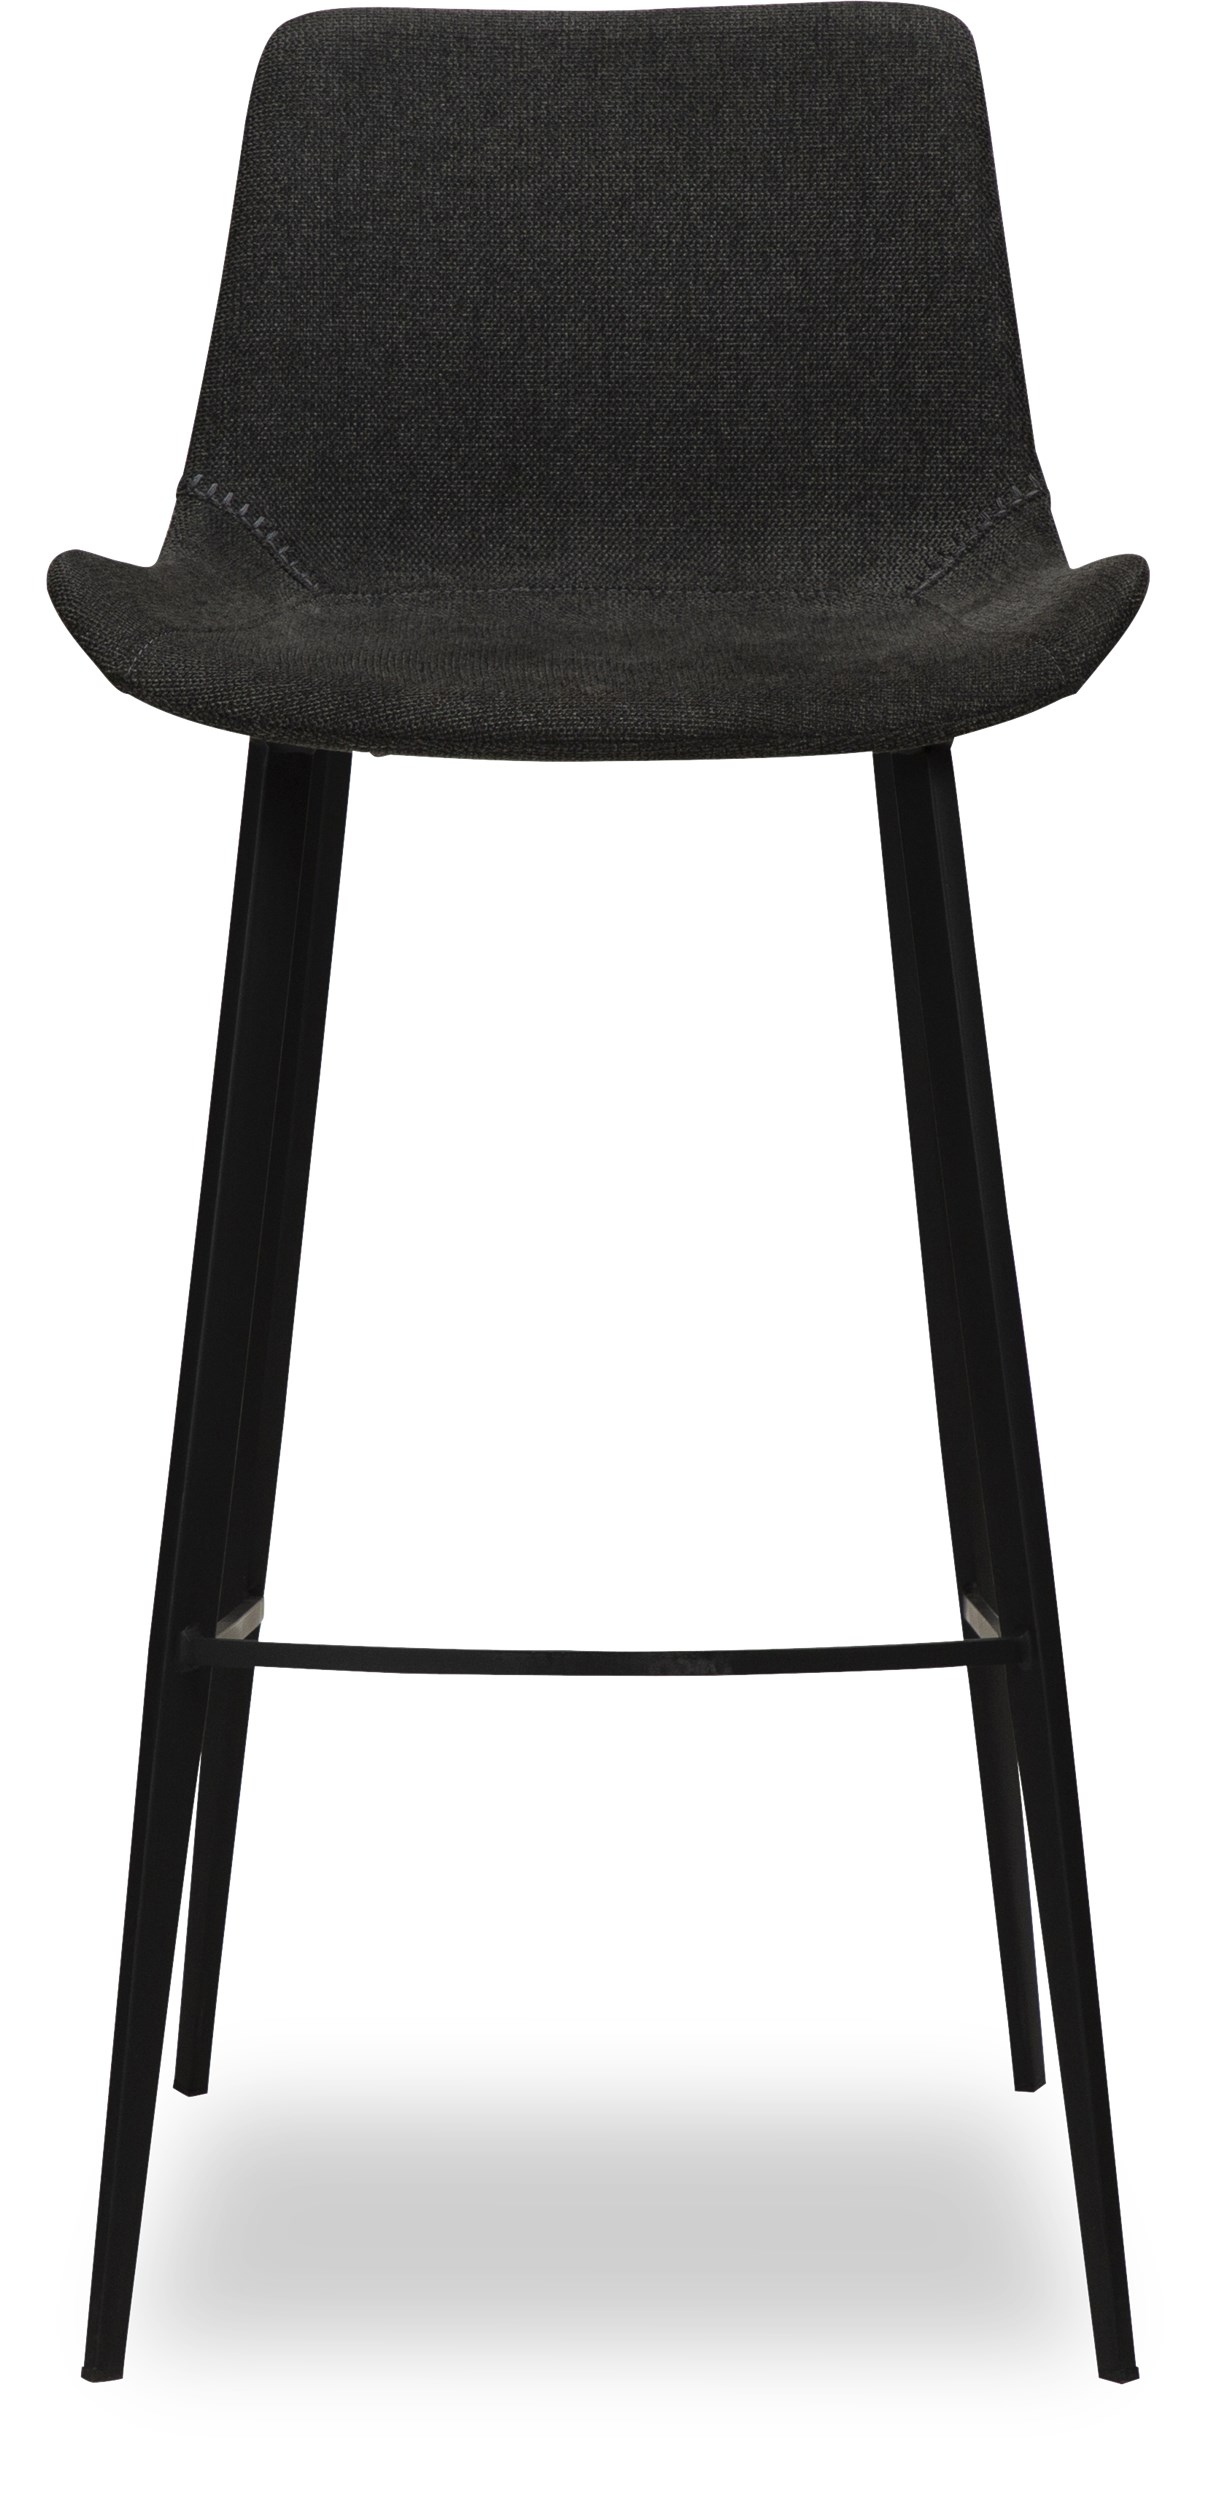 Hype Barstol - Sits i crow black textil och ben i svartlackerad metall